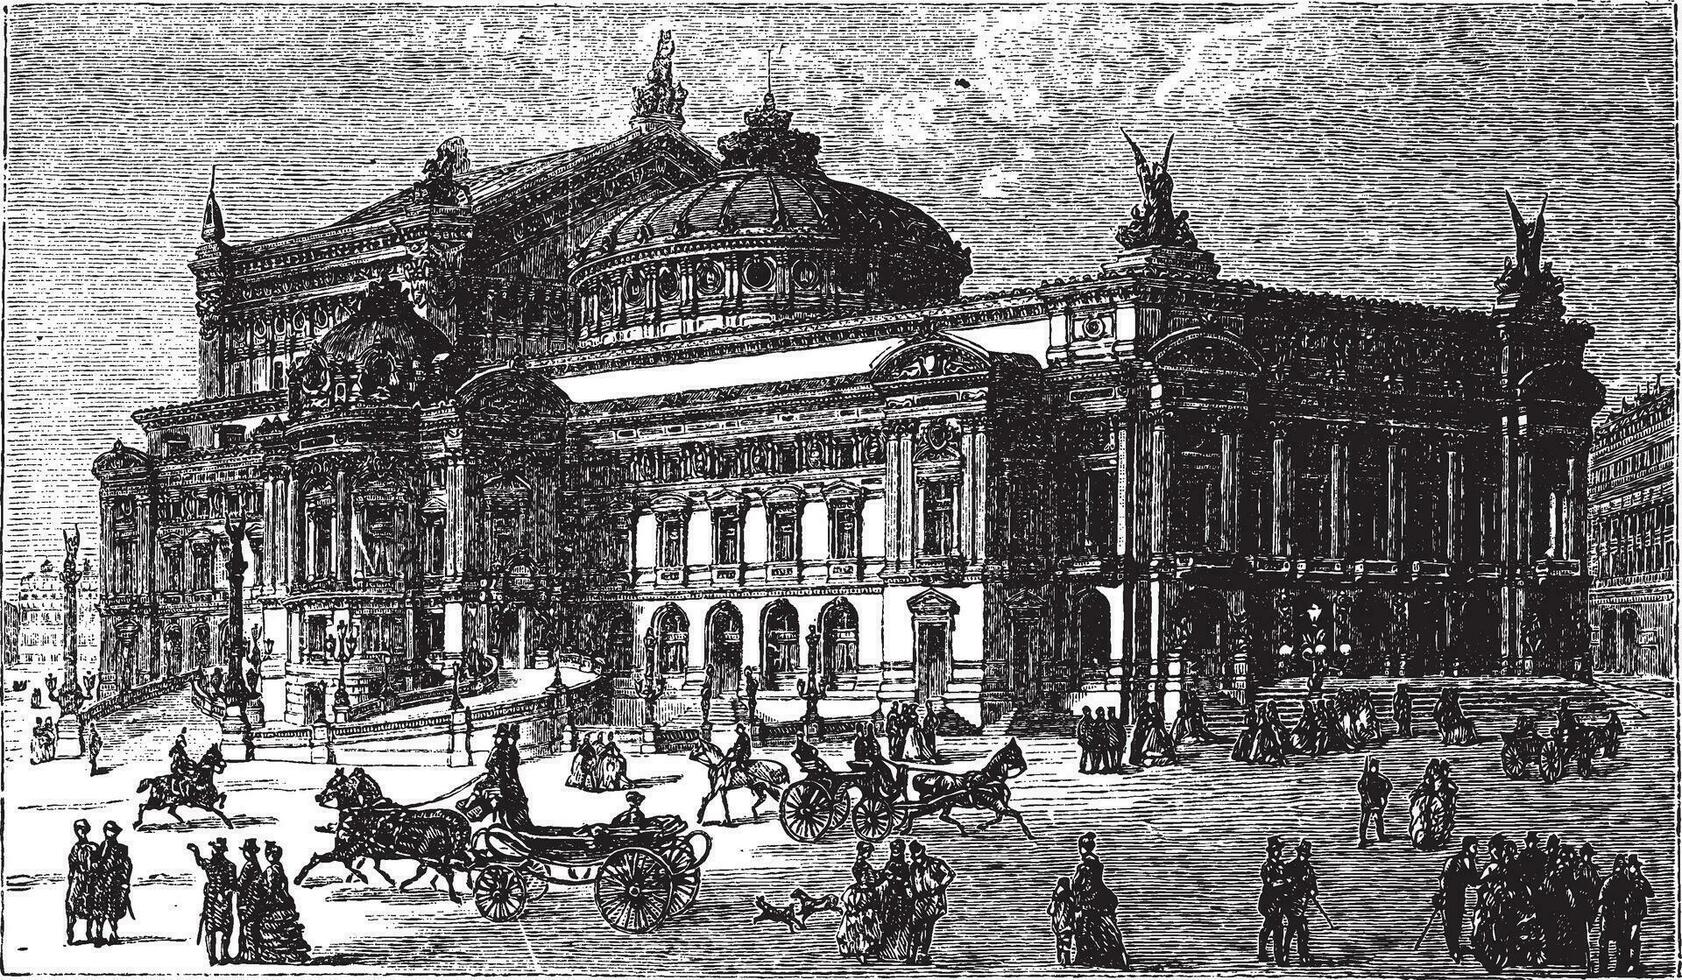 le Nouveau opéra dans Paris, France, en retard années 1800, ancien gravure vecteur